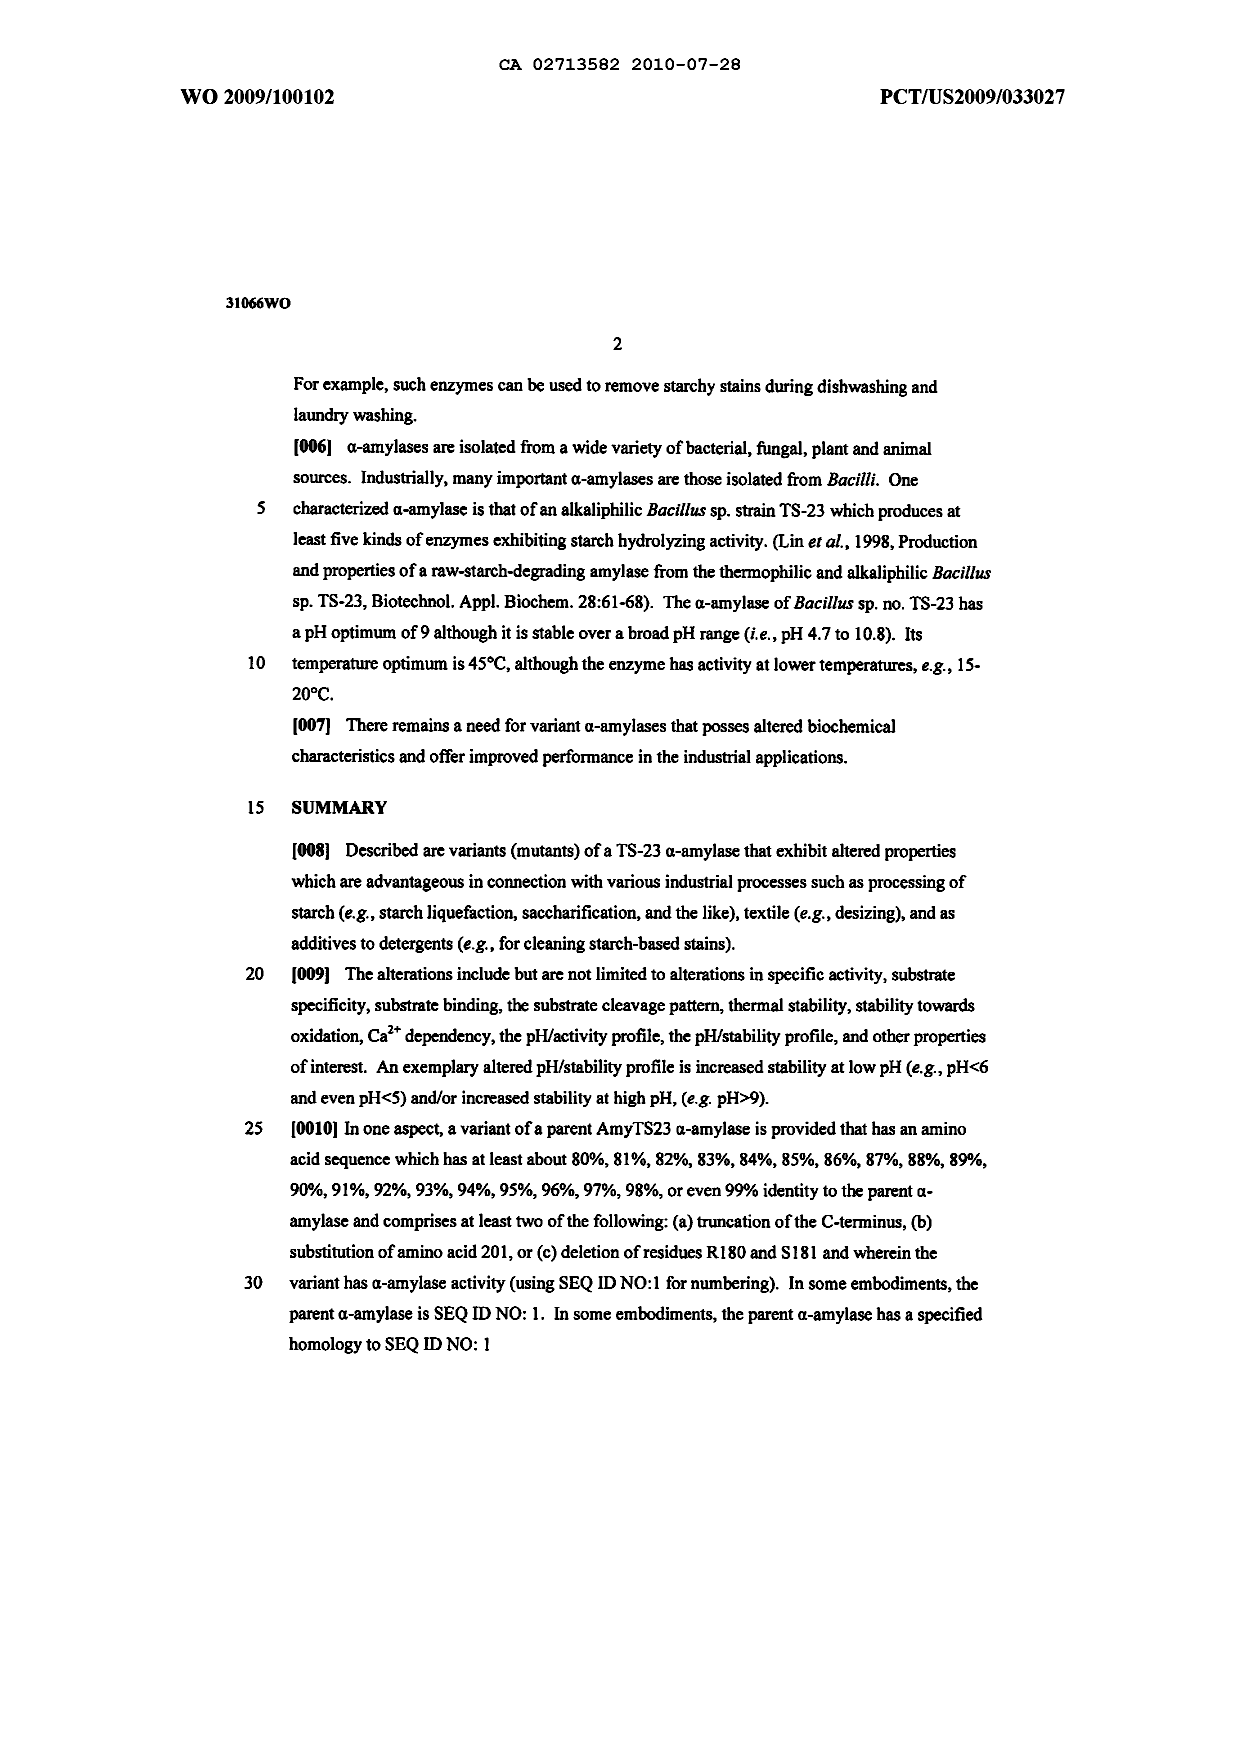 Canadian Patent Document 2713582. Description 20091214. Image 2 of 93